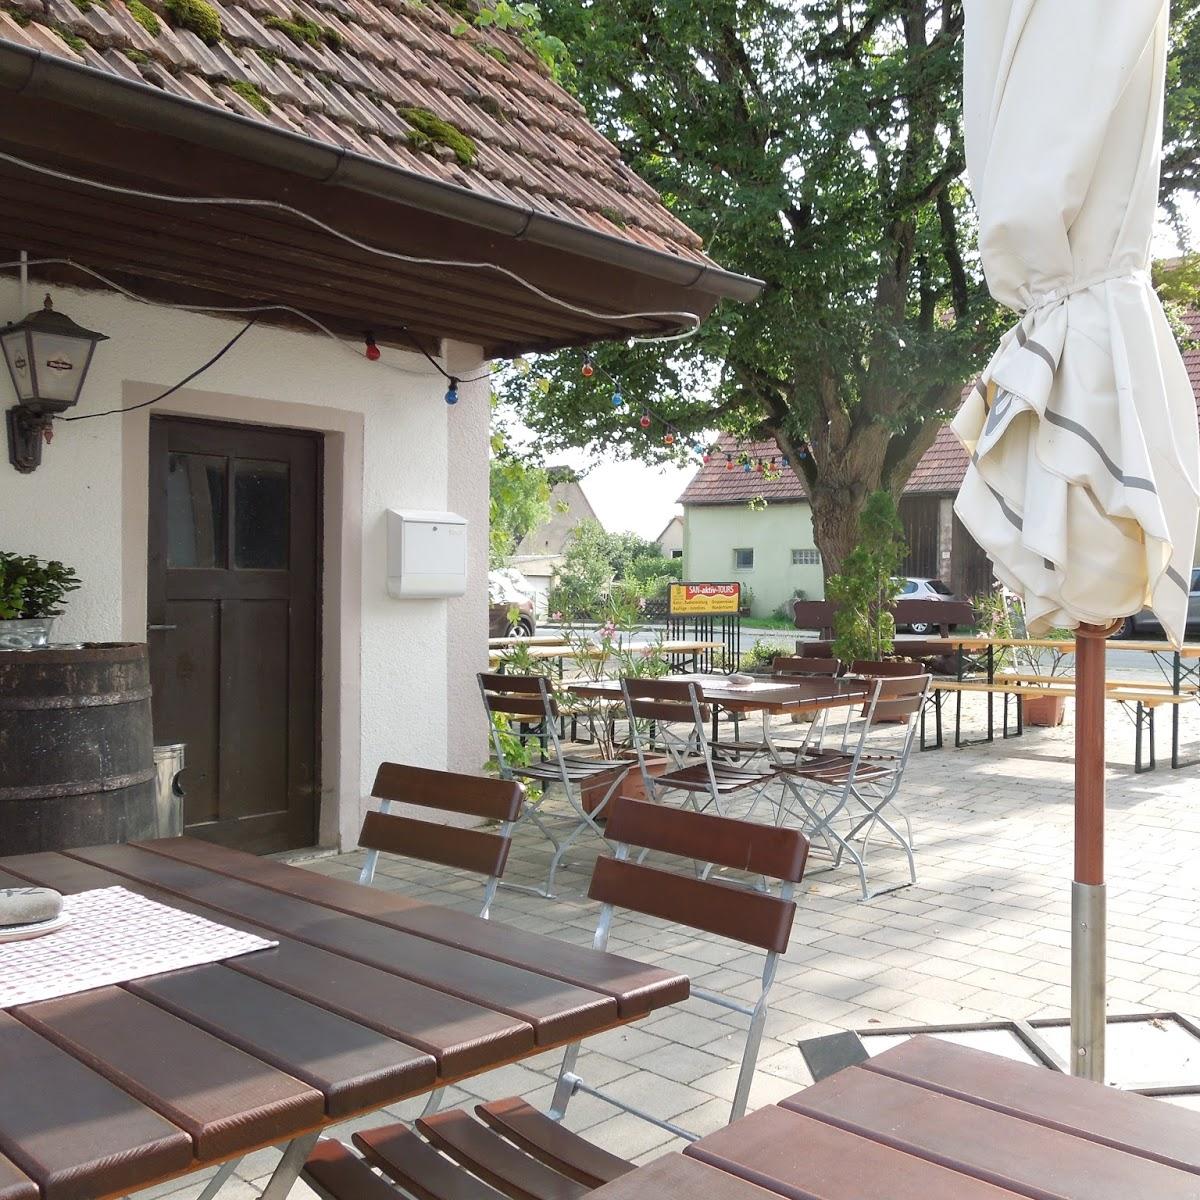 Restaurant "Gasthof Zum Hirschen" in  Gunzenhausen